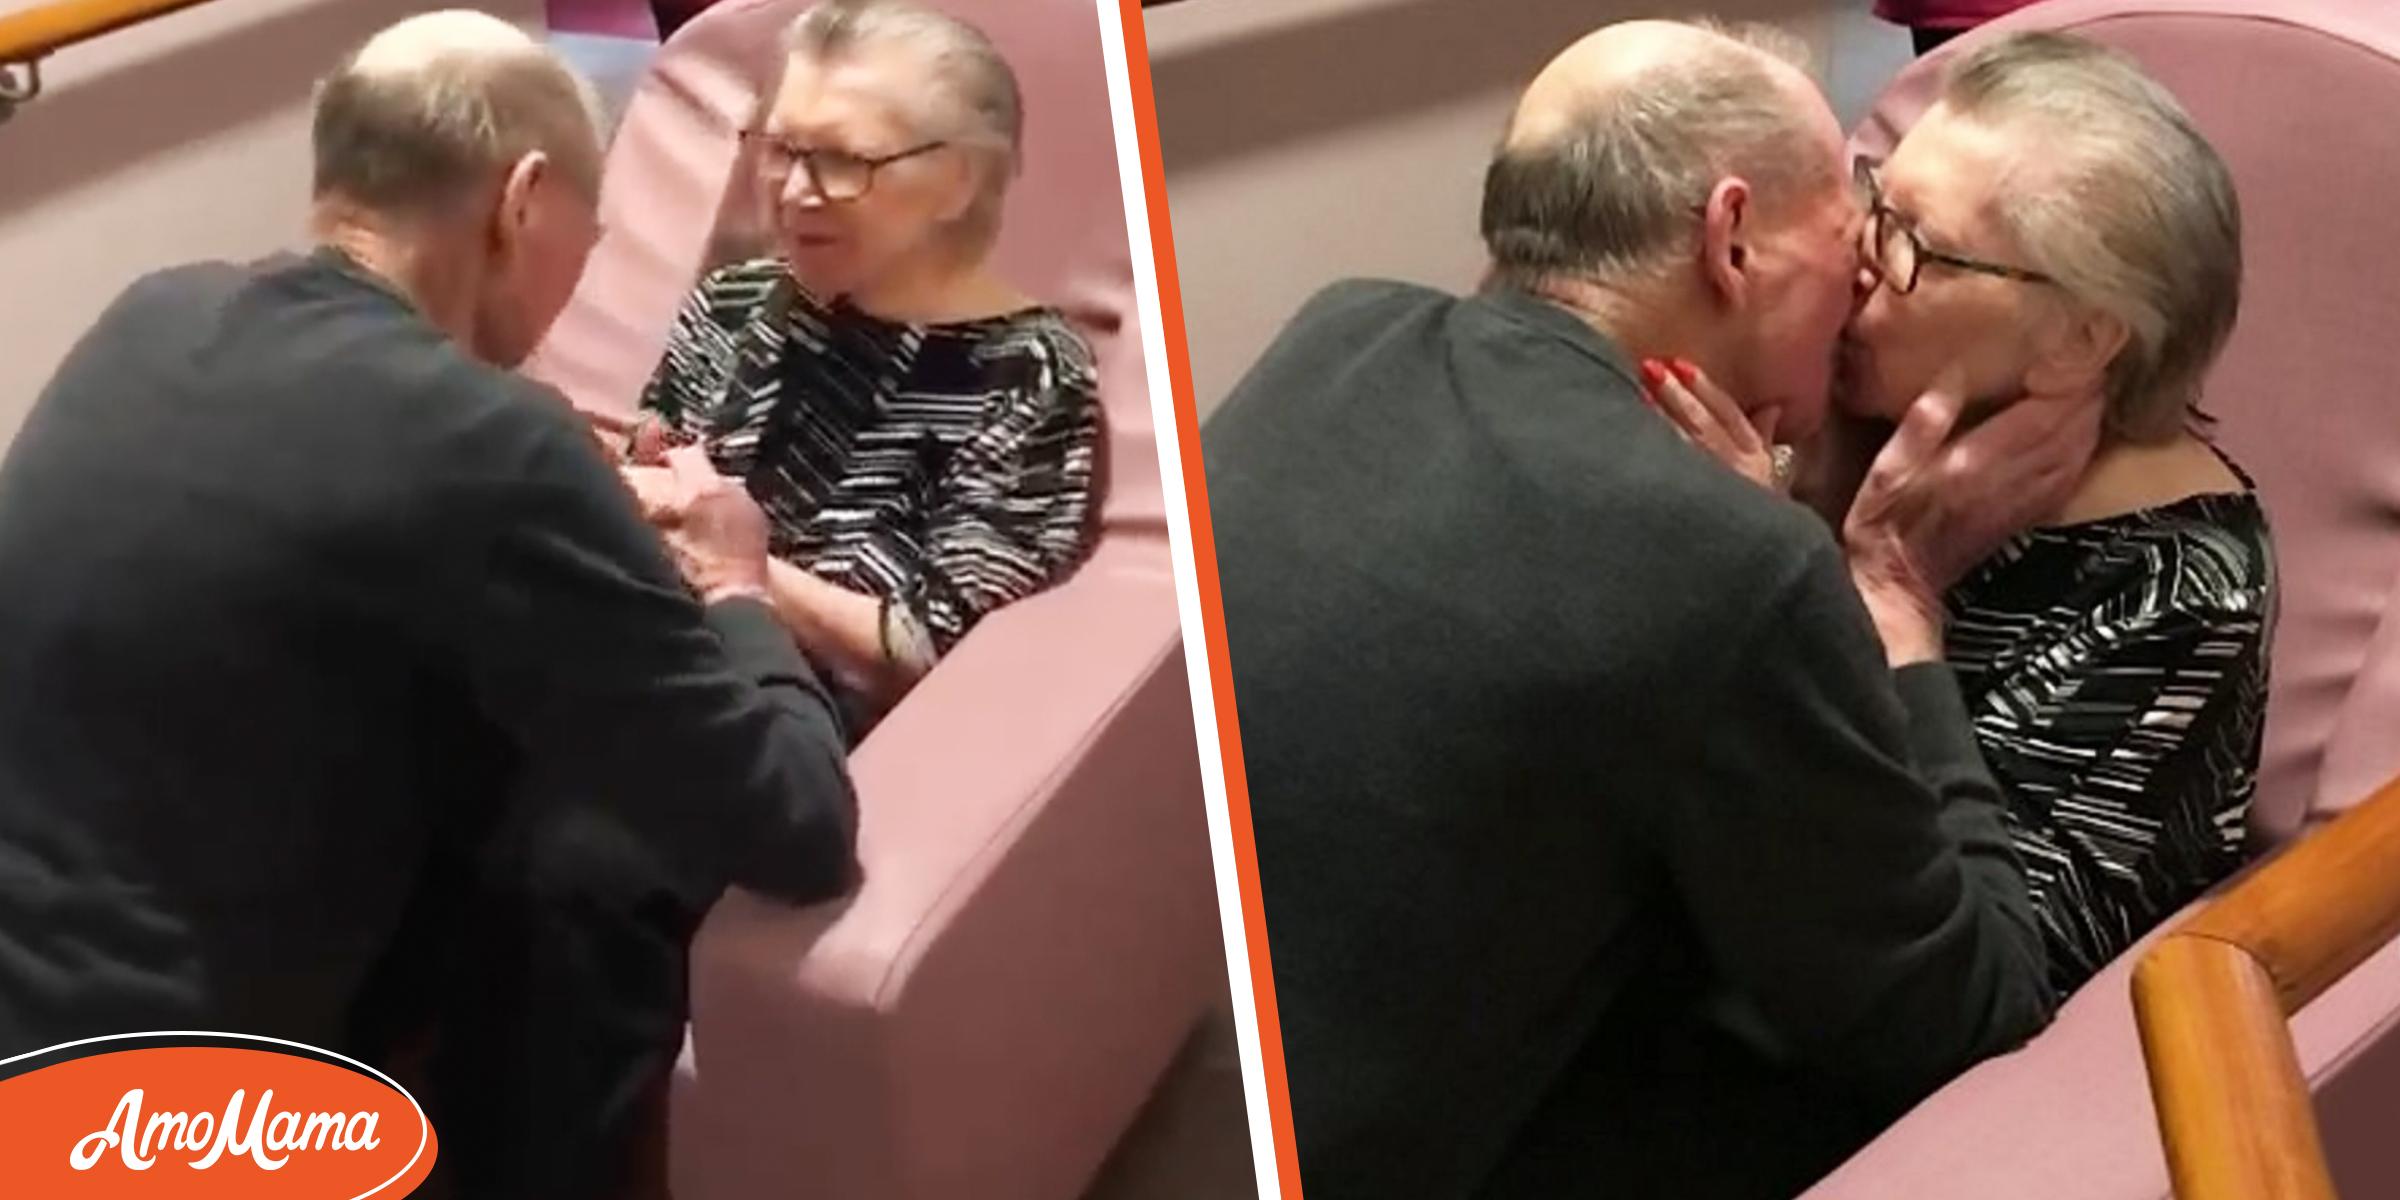 Un mari surprend sa femme en emménageant dans sa maison de retraite et l’embrasse à genoux après des mois de séparation